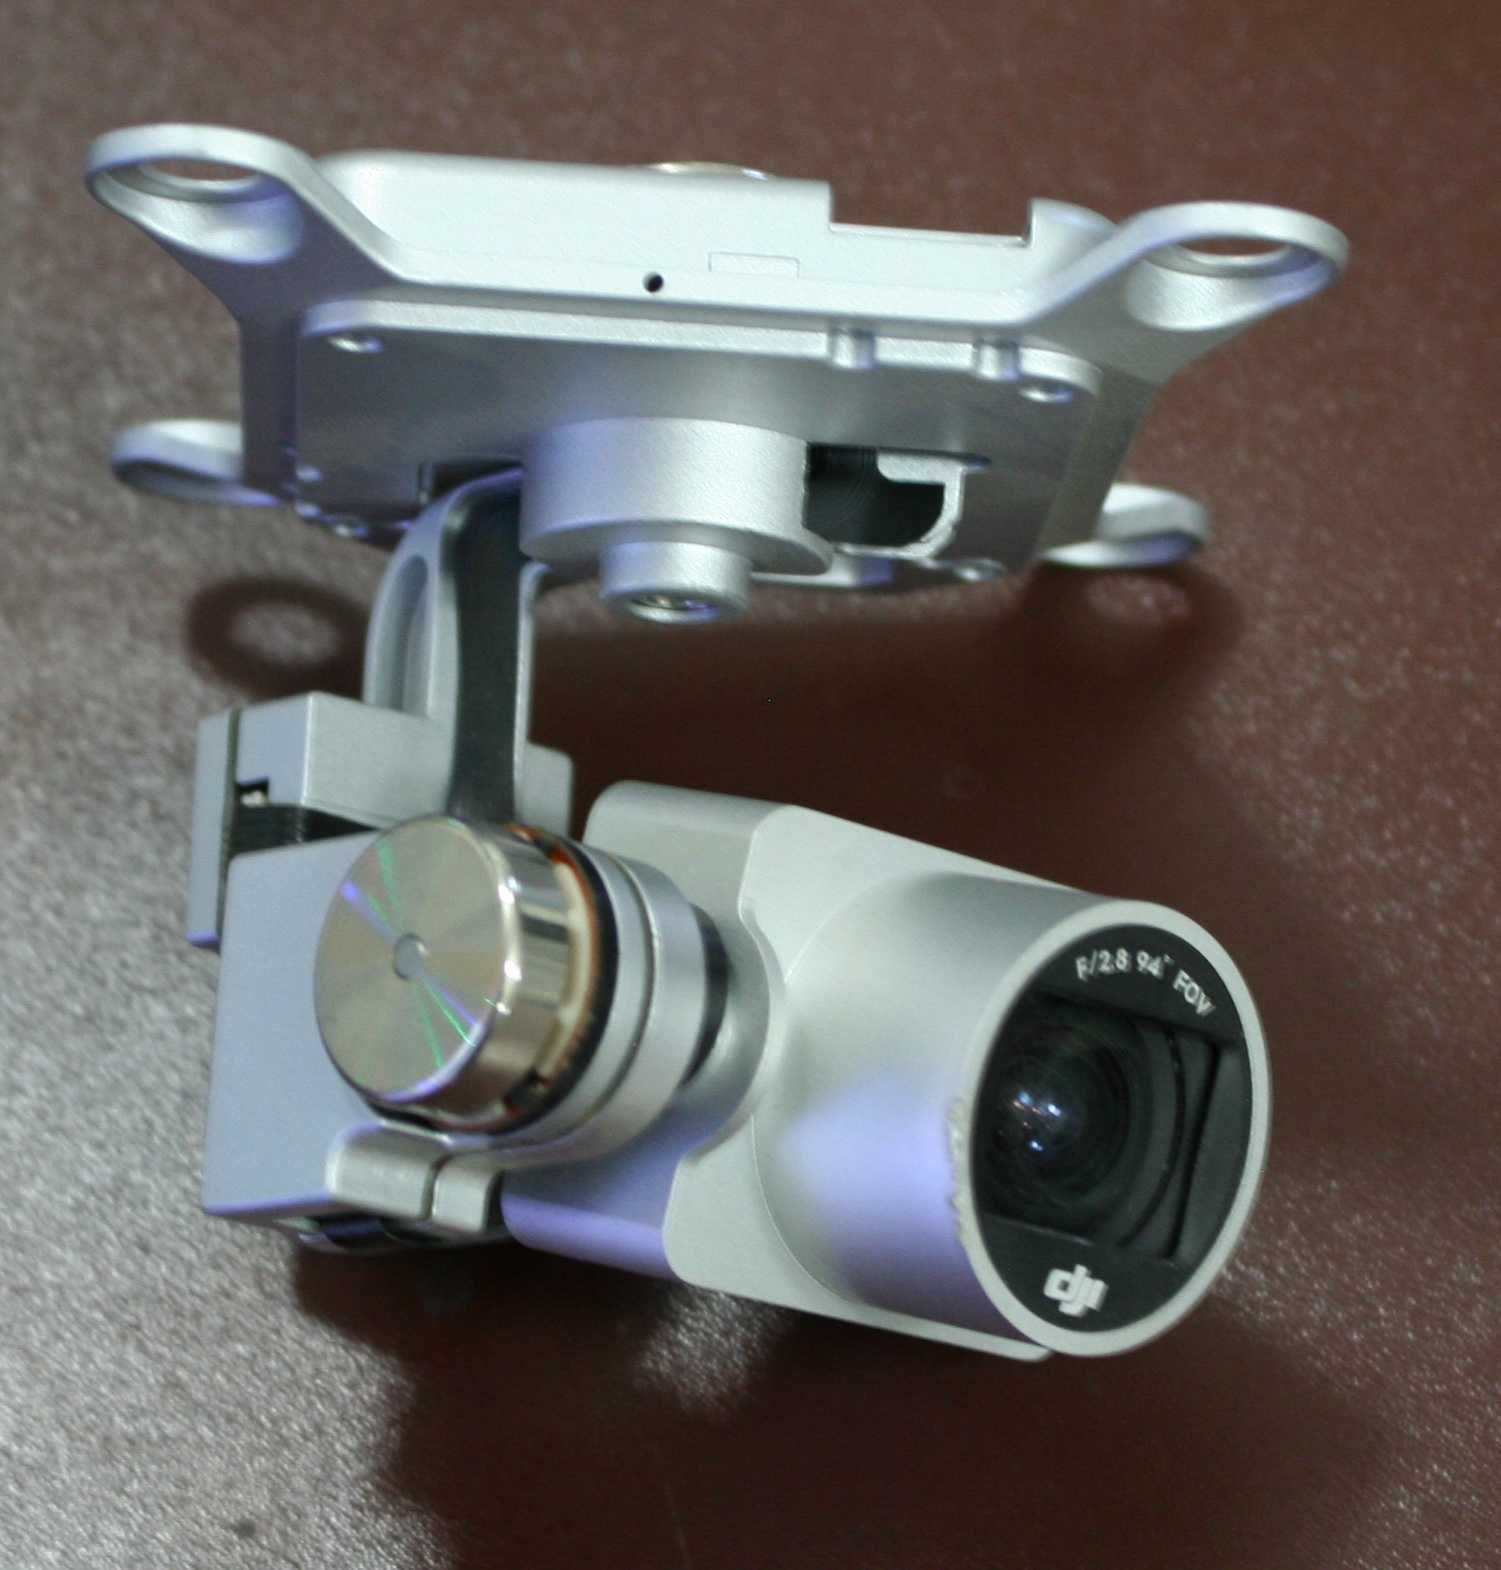 Kamera z gimbalem do drona Pantom 3 standart